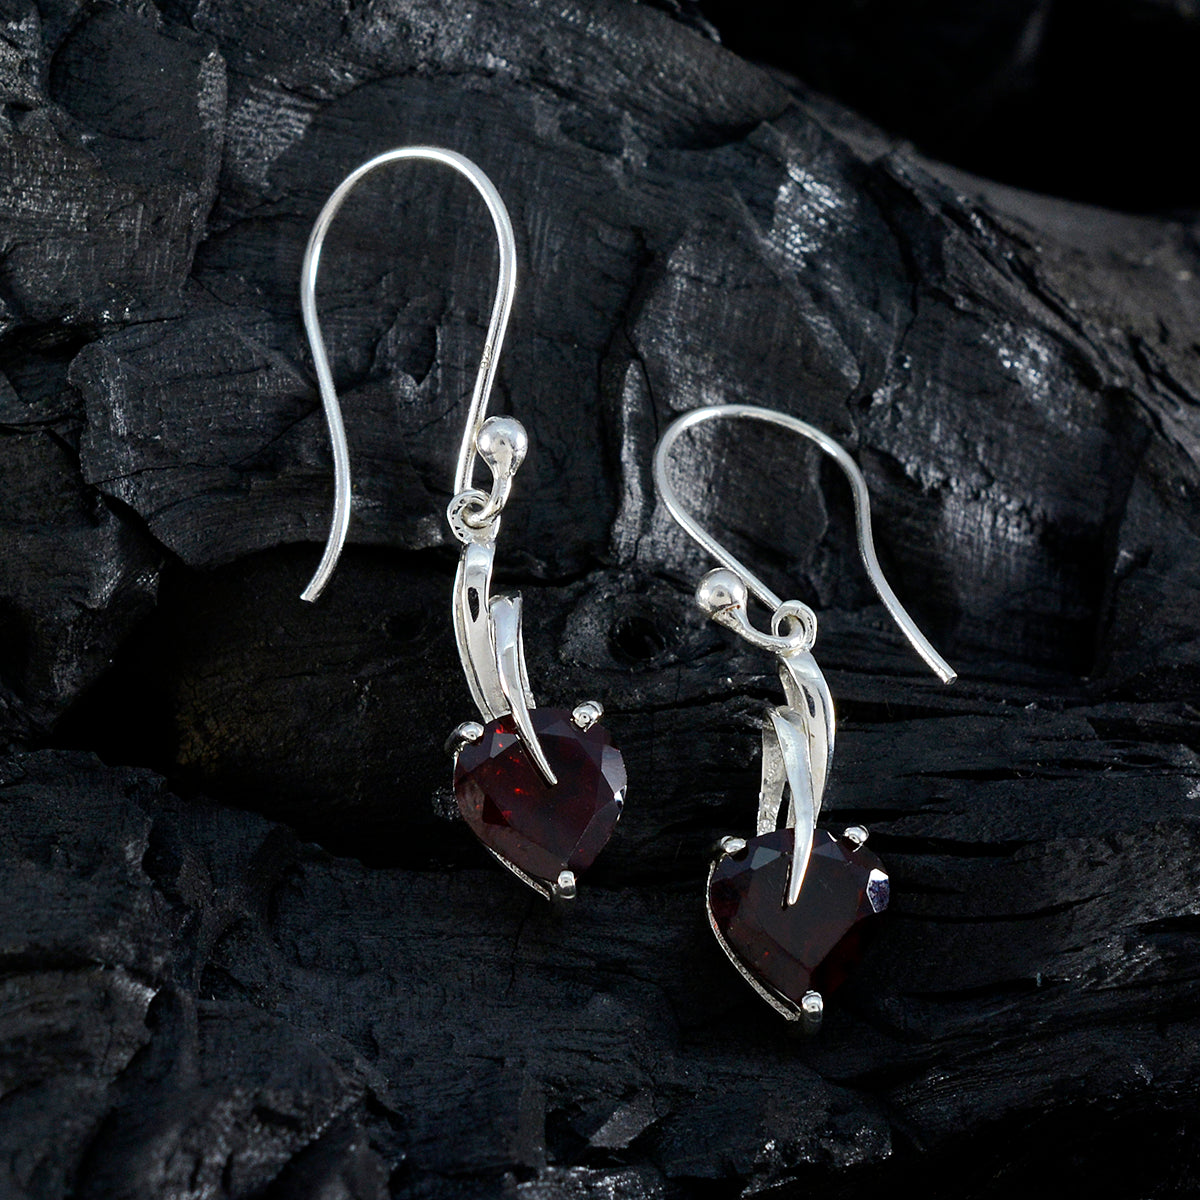 Riyo esthétique 925 boucle d'oreille en argent sterling pour femme boucle d'oreille grenat réglage de la boucle boucle d'oreille rouge boucle d'oreille pendante